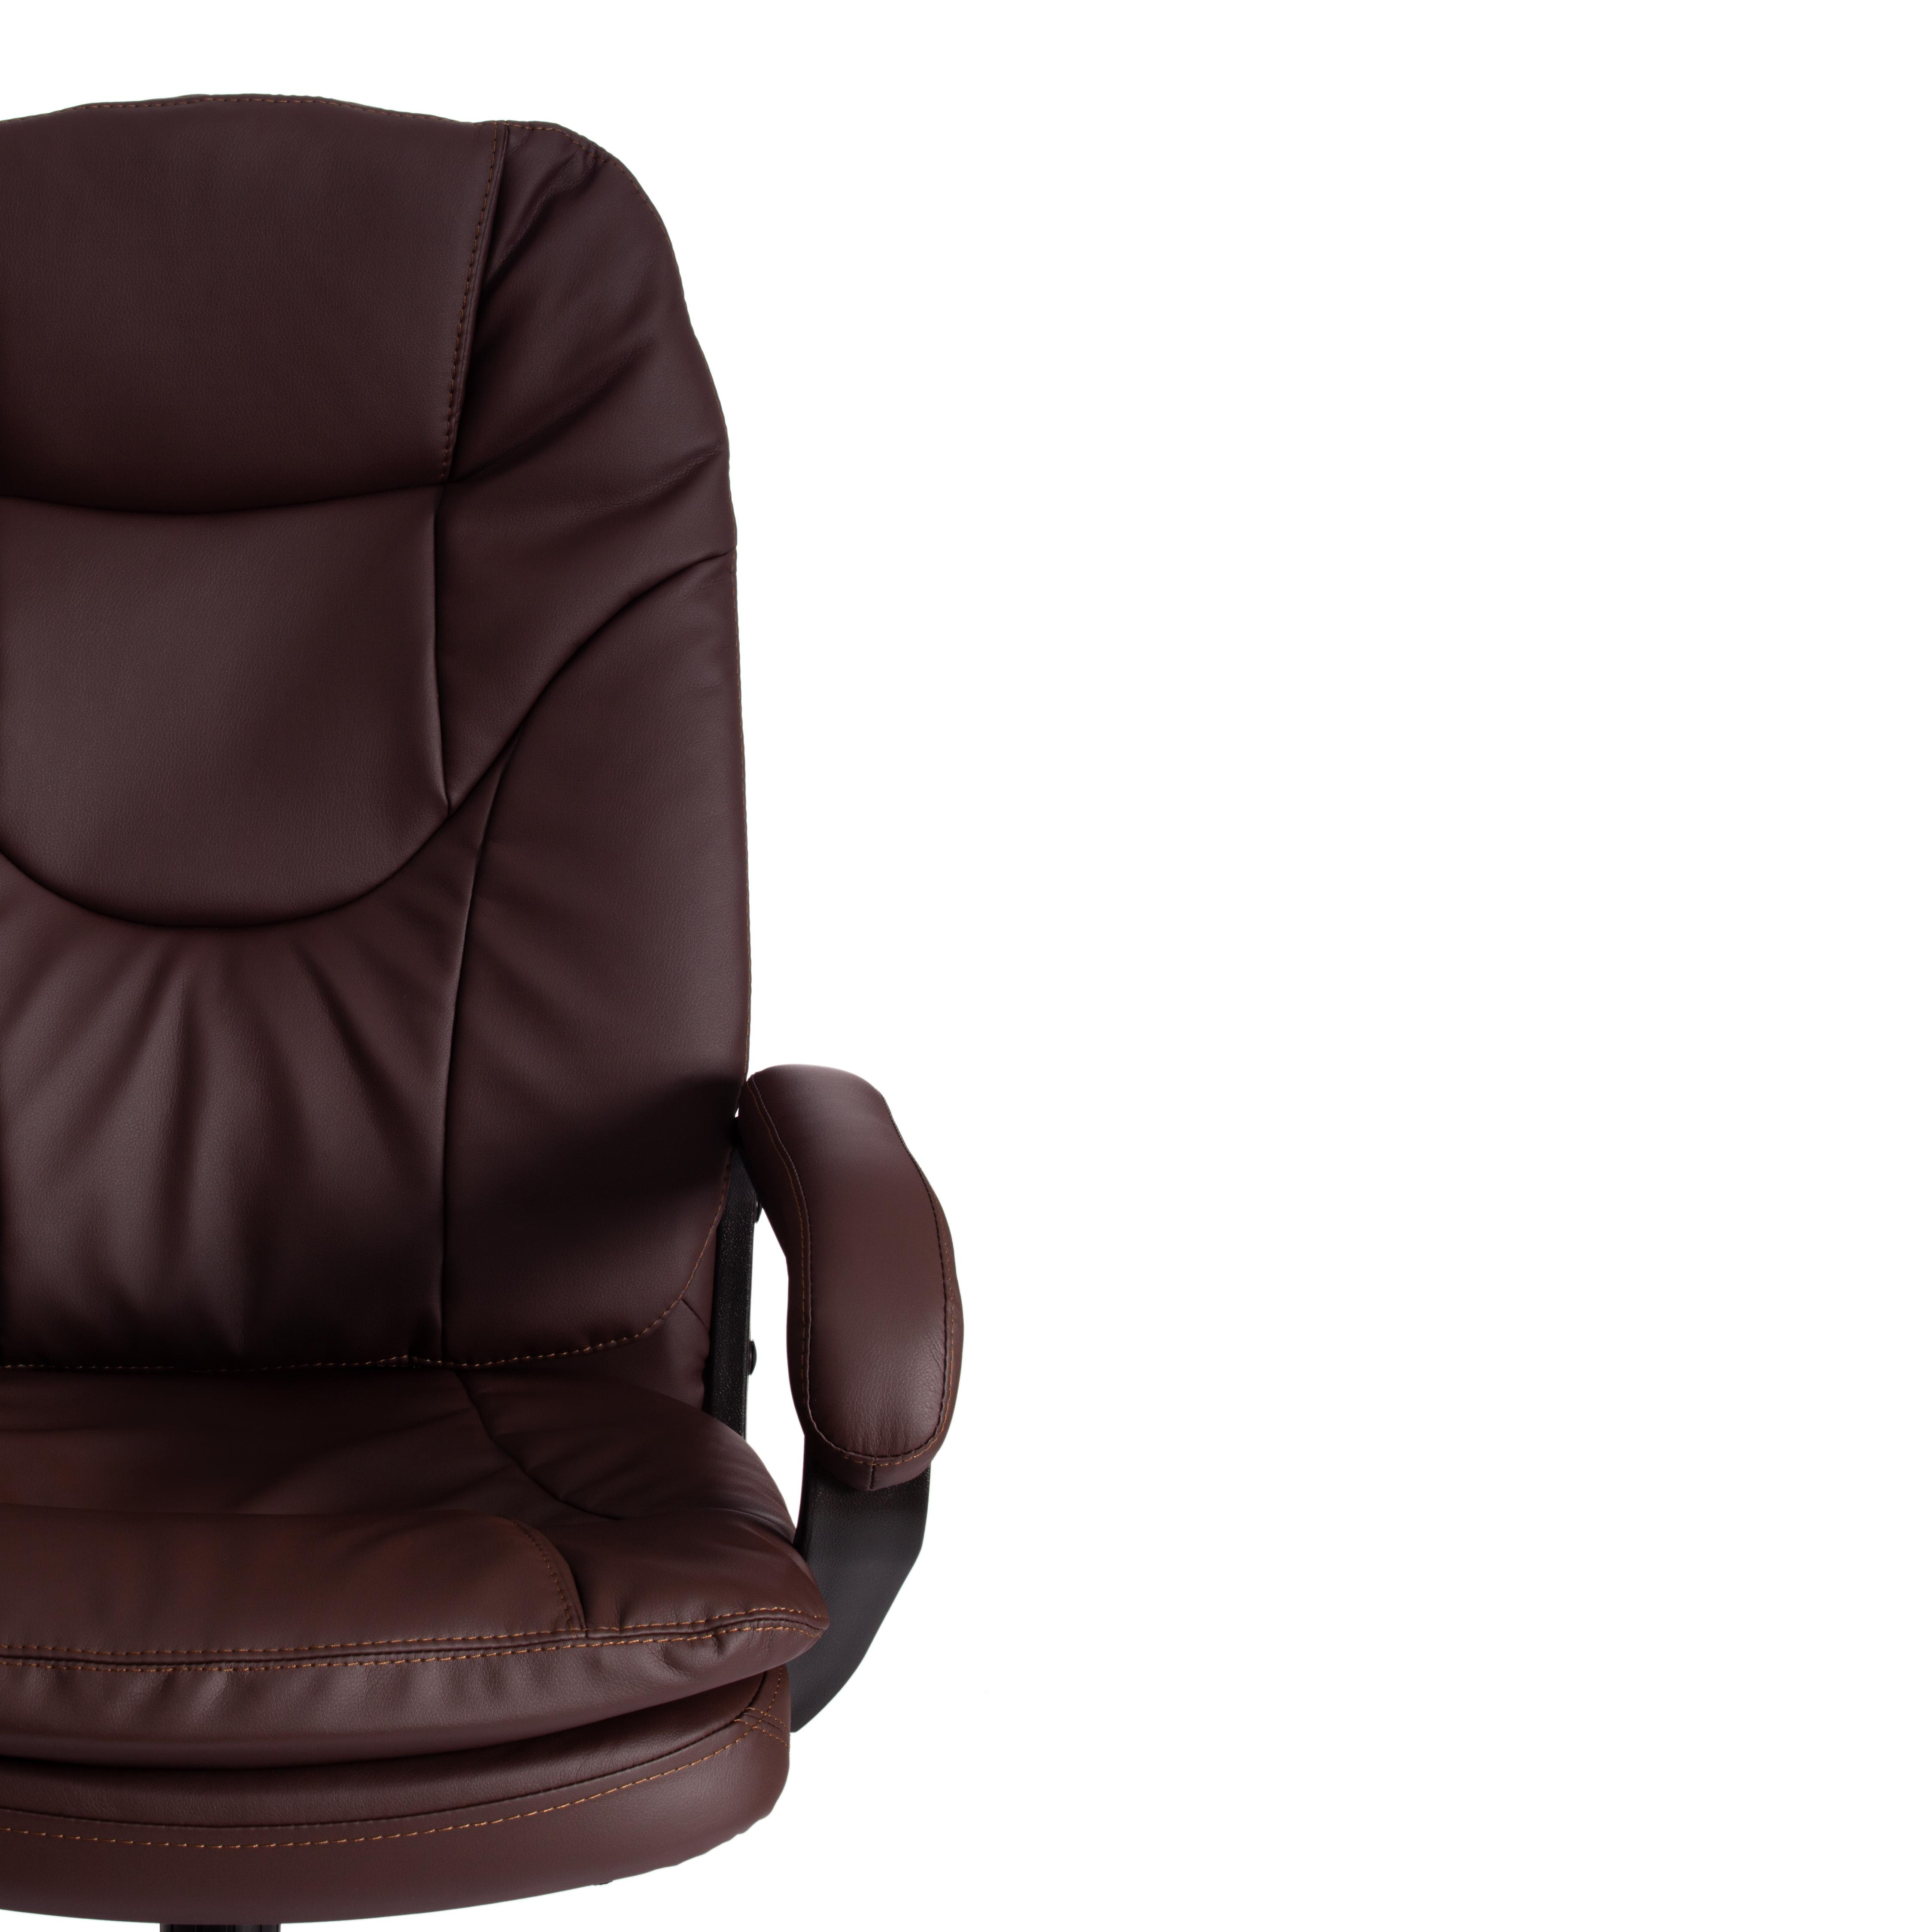 Кресло COMFORT LT (22) кож/зам, коричневый, 36-36